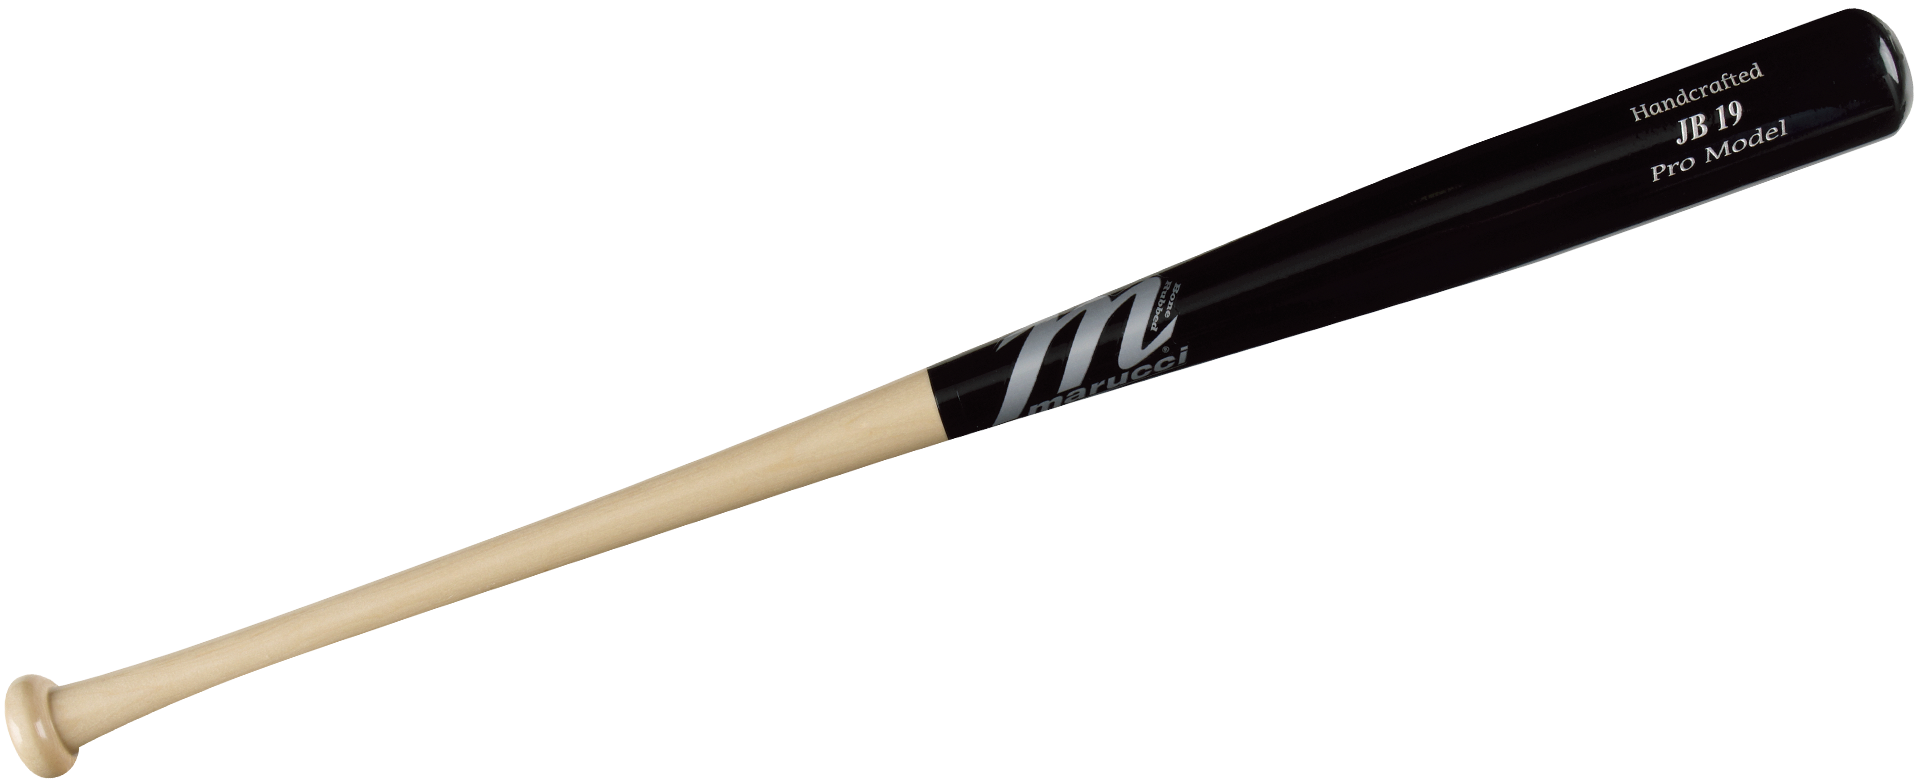 Baseball Bat PNG Image